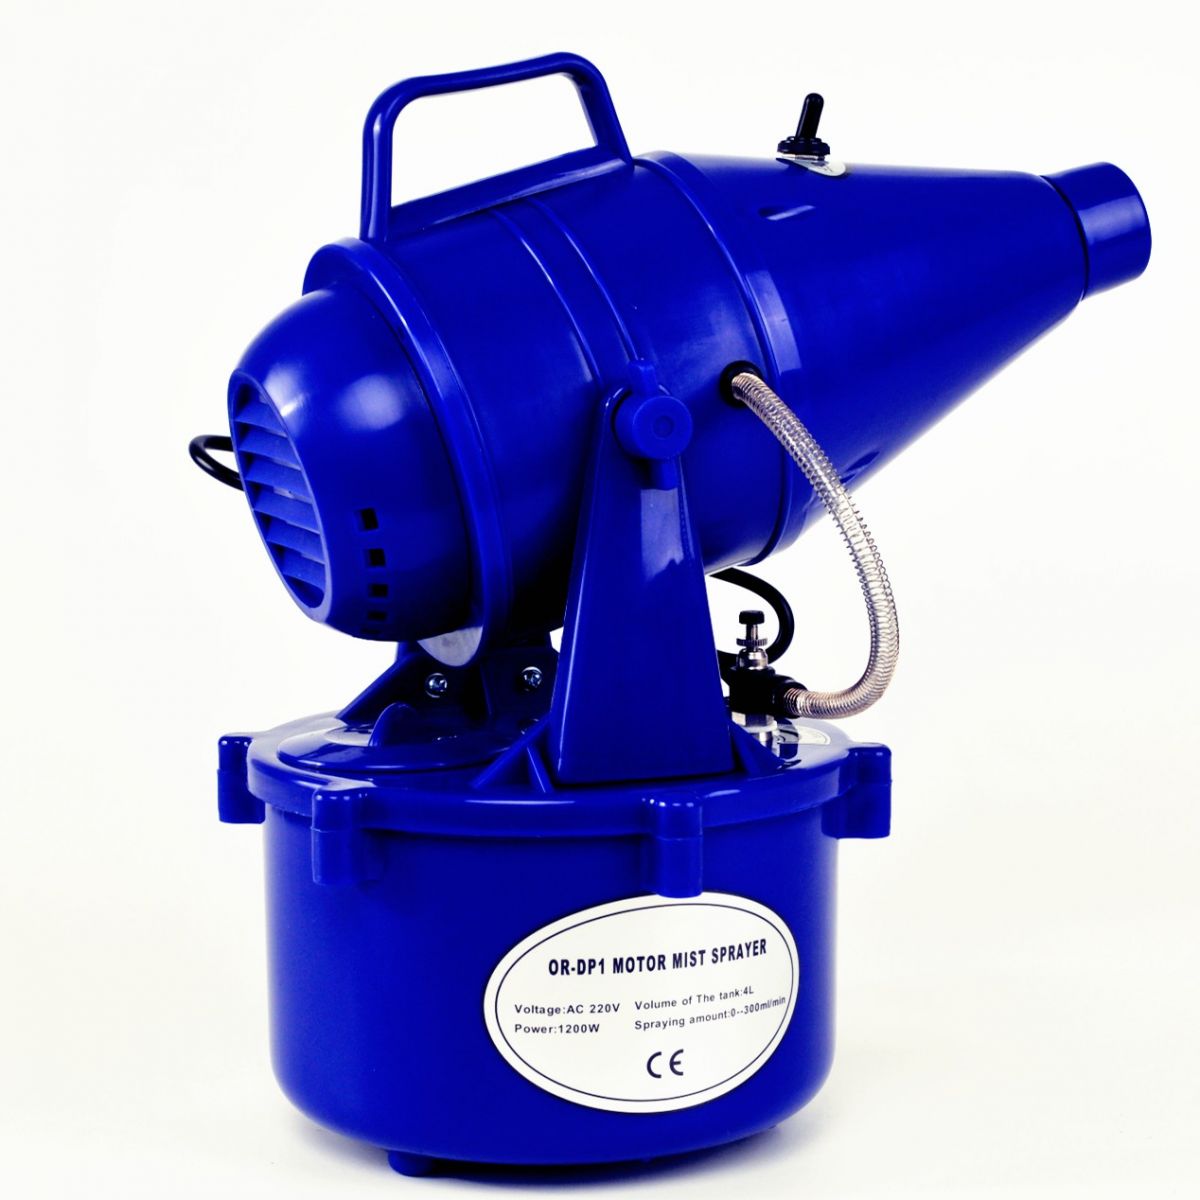 Motor mist sprayer OR-DP1 (ULV Fogger)